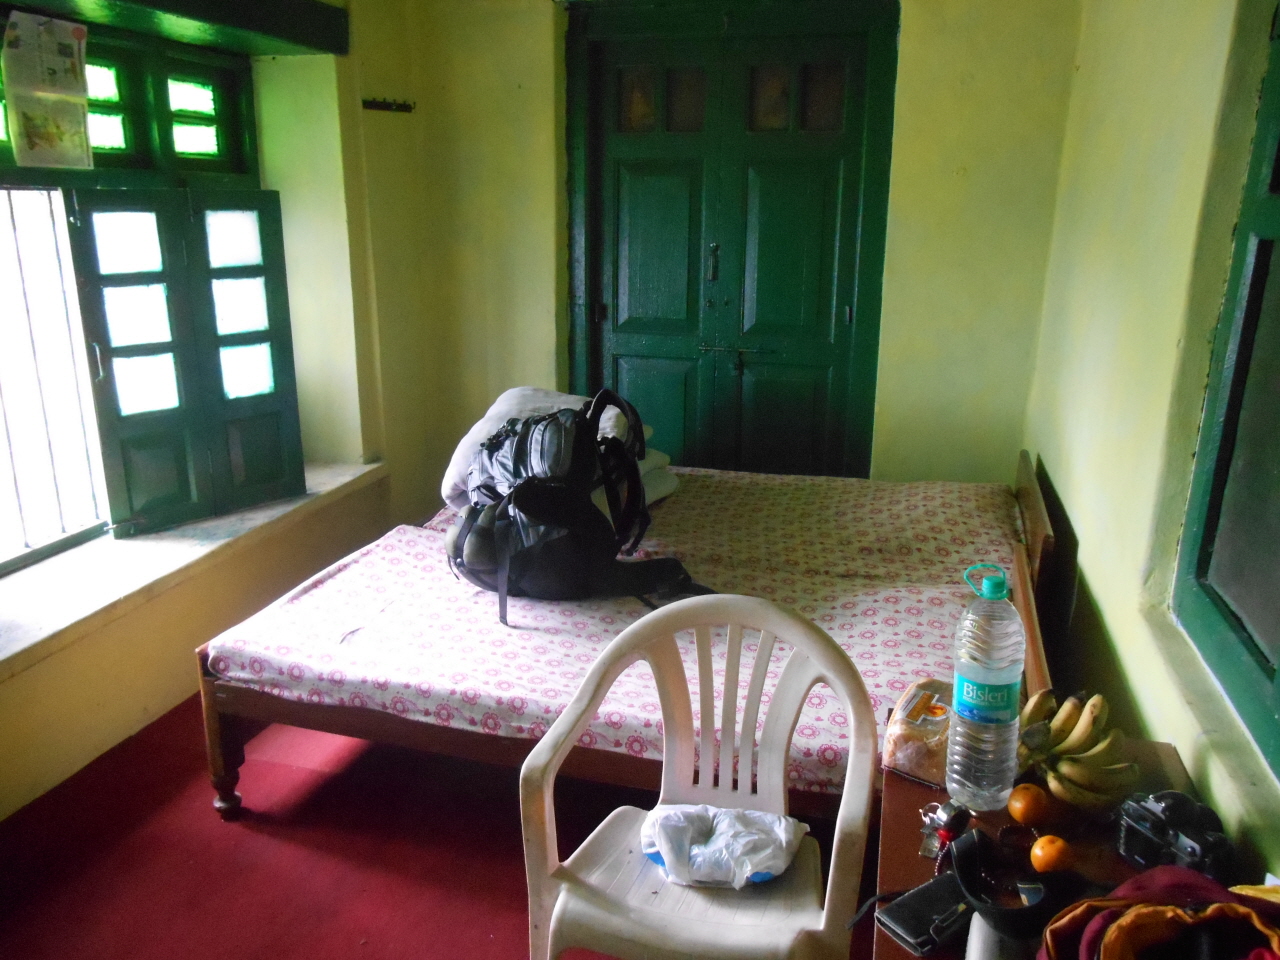 내가 묵었던 더블 침대가 놓여진 간디 아쉬람 숙소. 마하트마 간디가 바로 이 방에서 묵었다고 한다. 